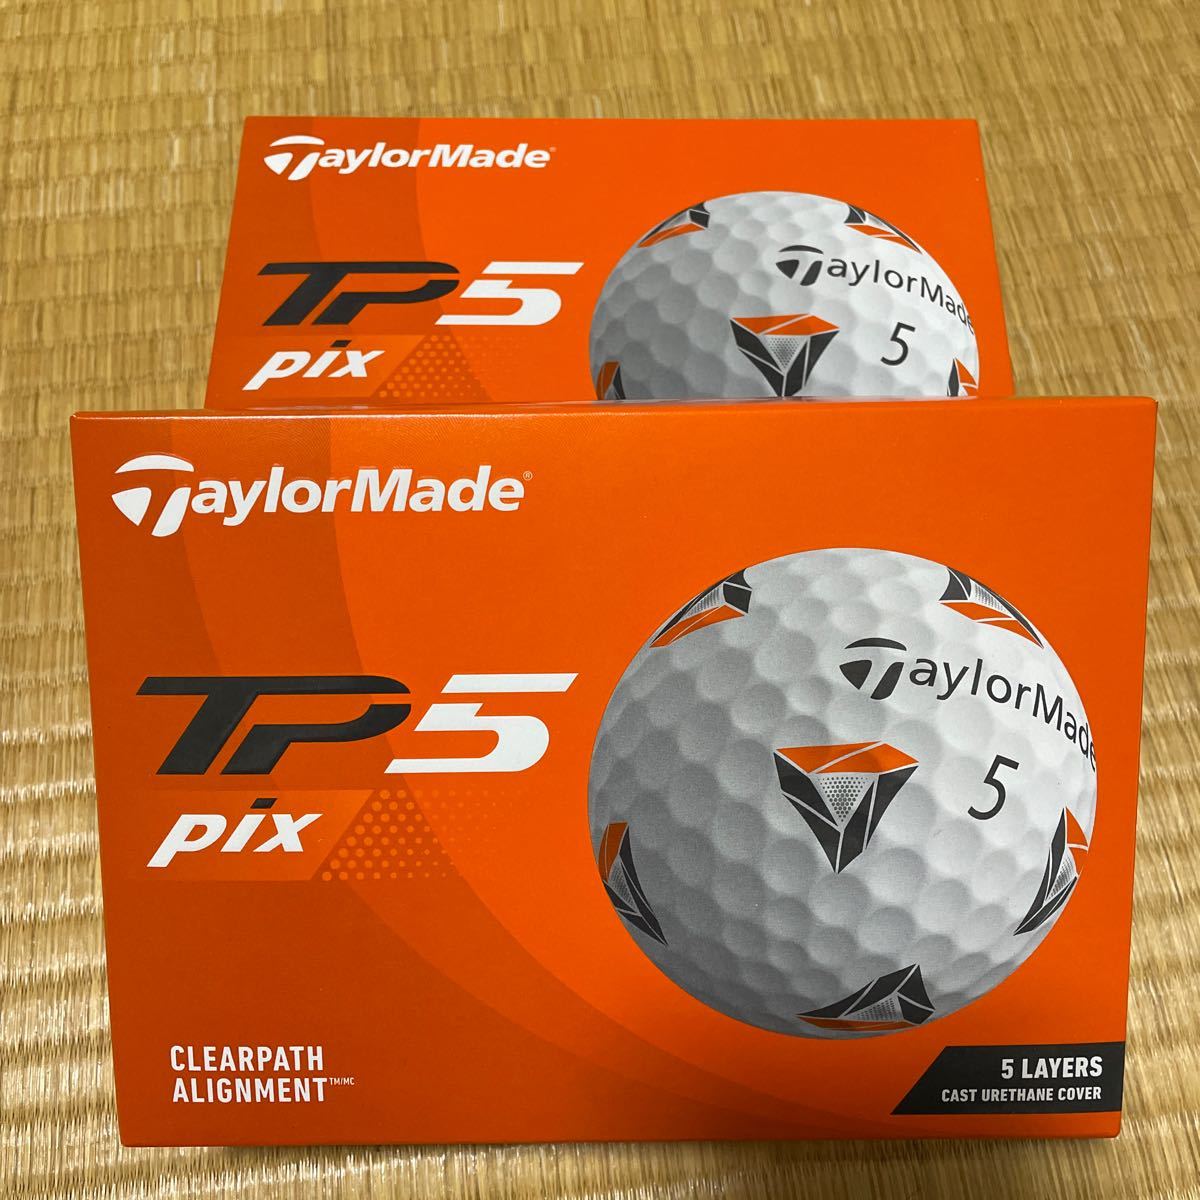 テーラーメイド ゴルフボール New TP5 Pix  2021年モデル